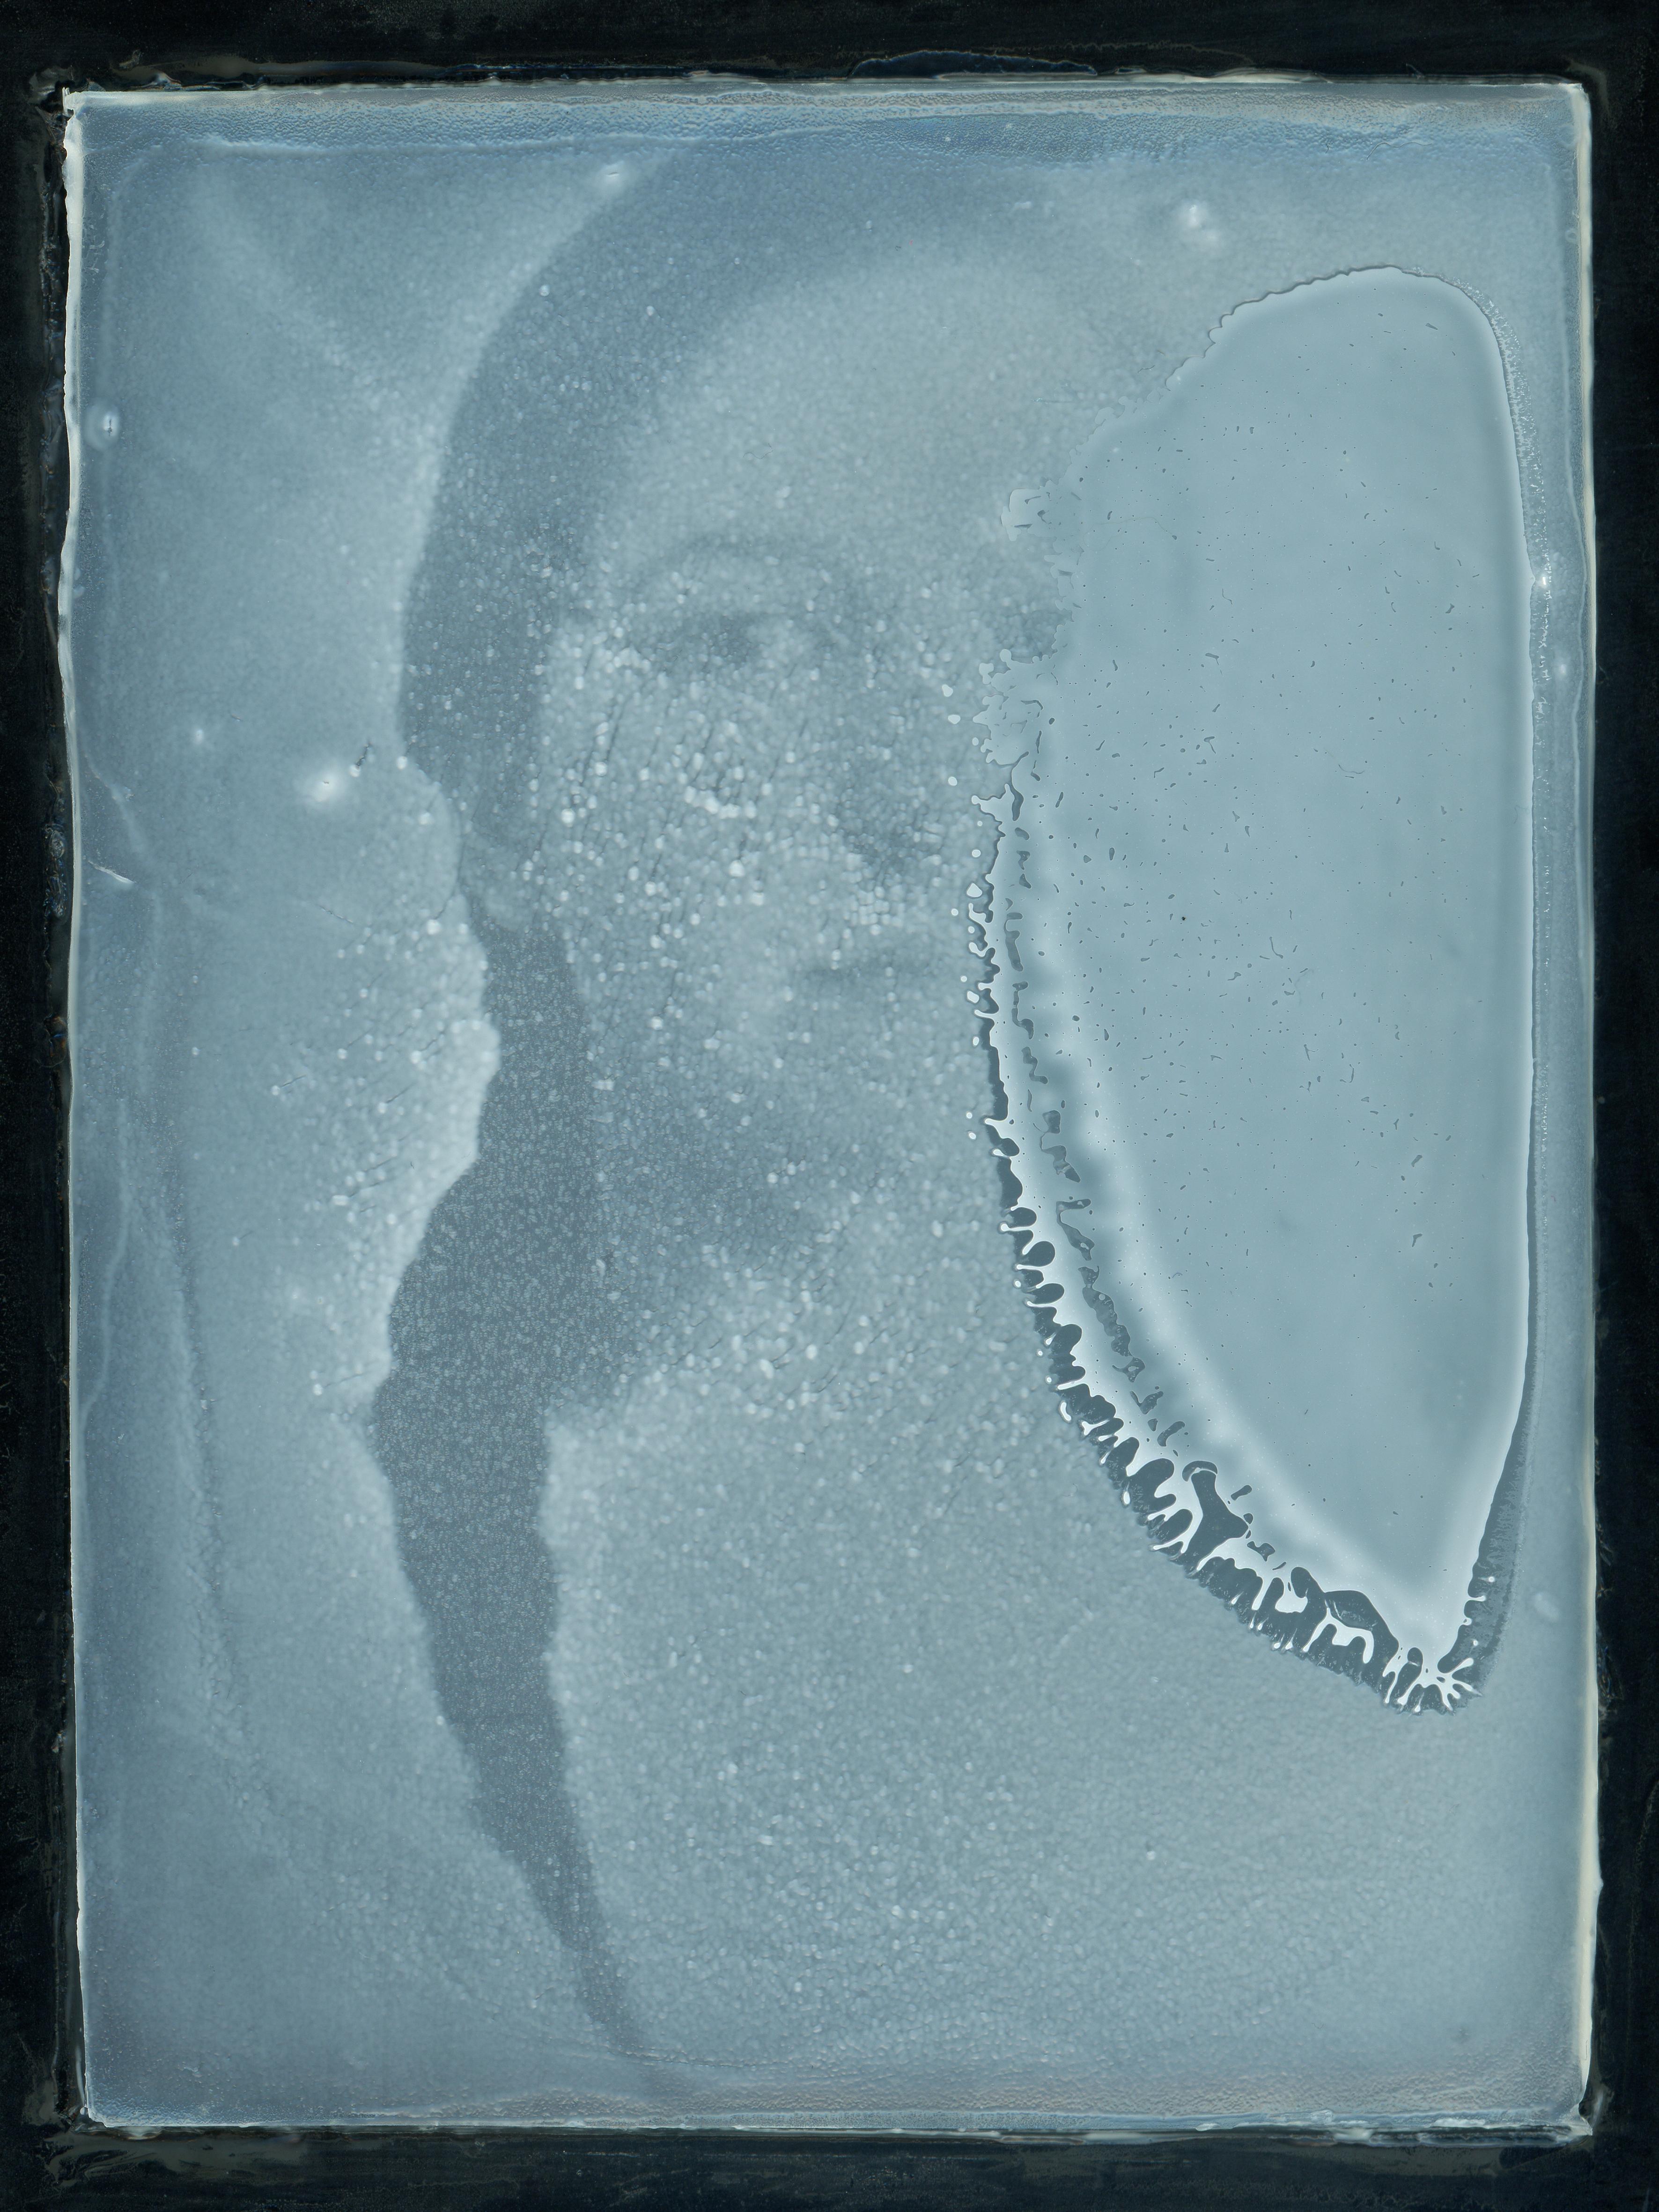 Yeasted Teresa - Zeitgenössisch, Konzeptionell, Polaroid, 21. Jahrhundert, Porträt